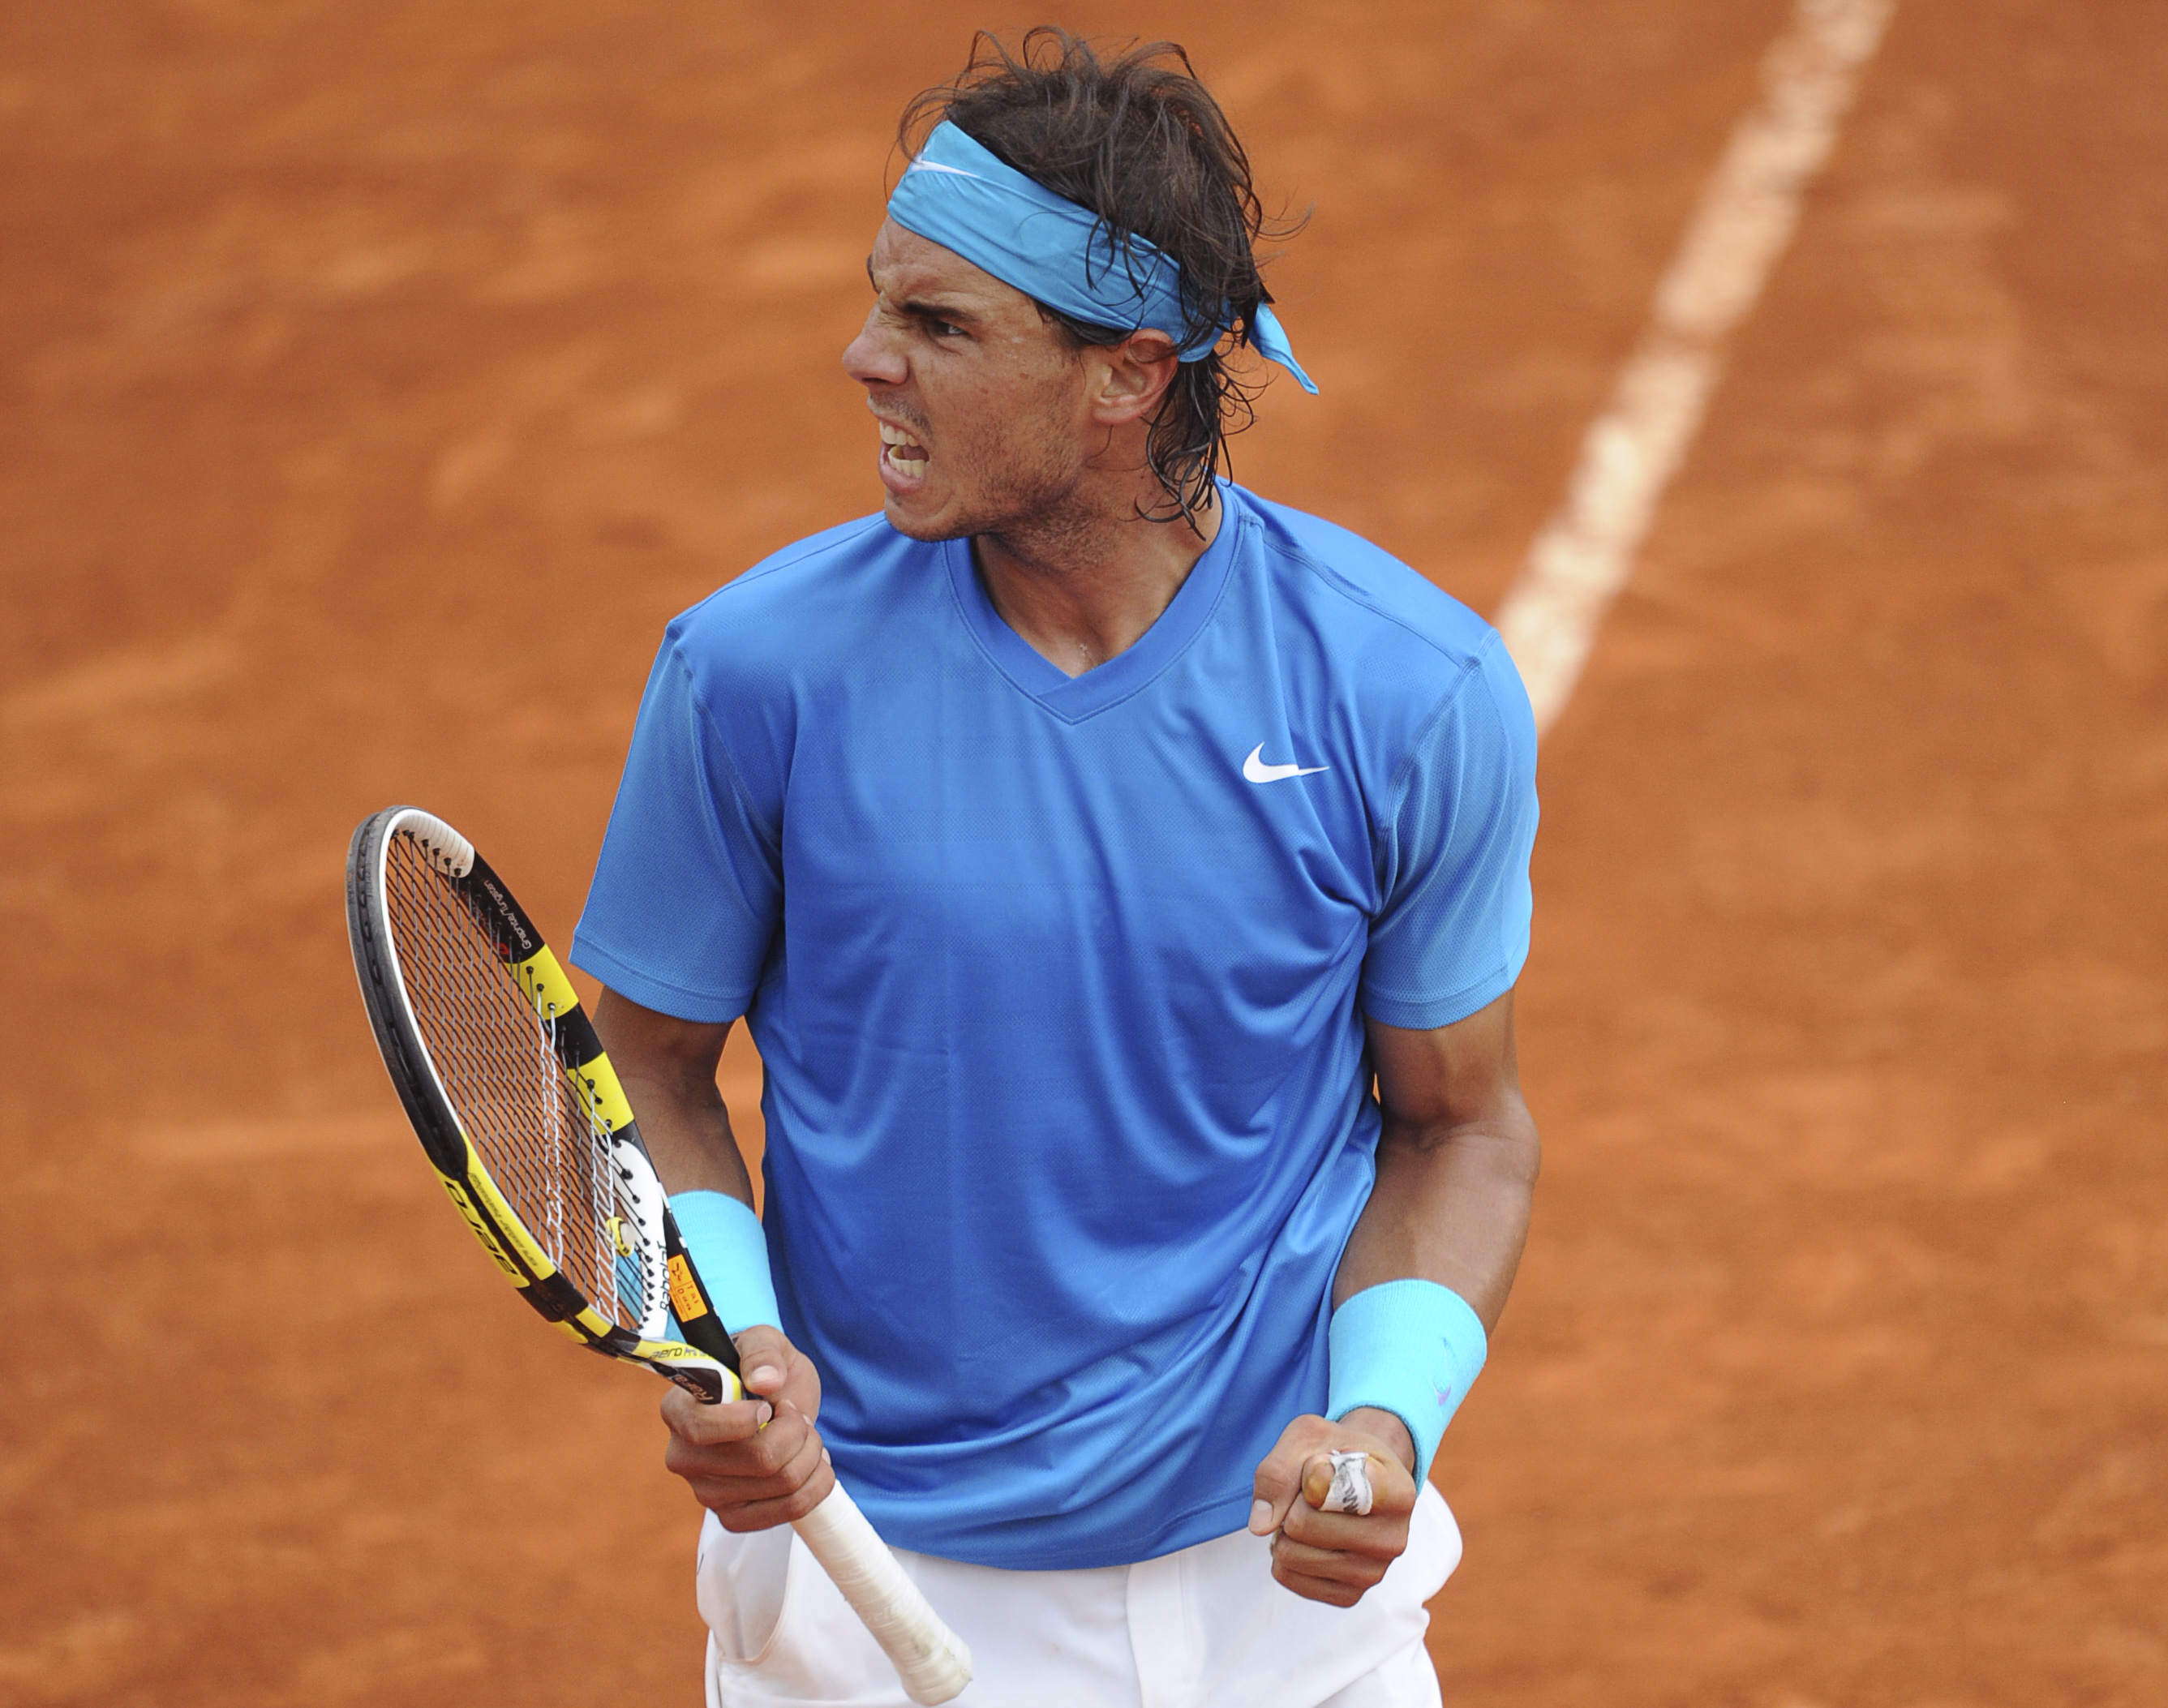 Tennis, Roger Federer, Rafael Nadal